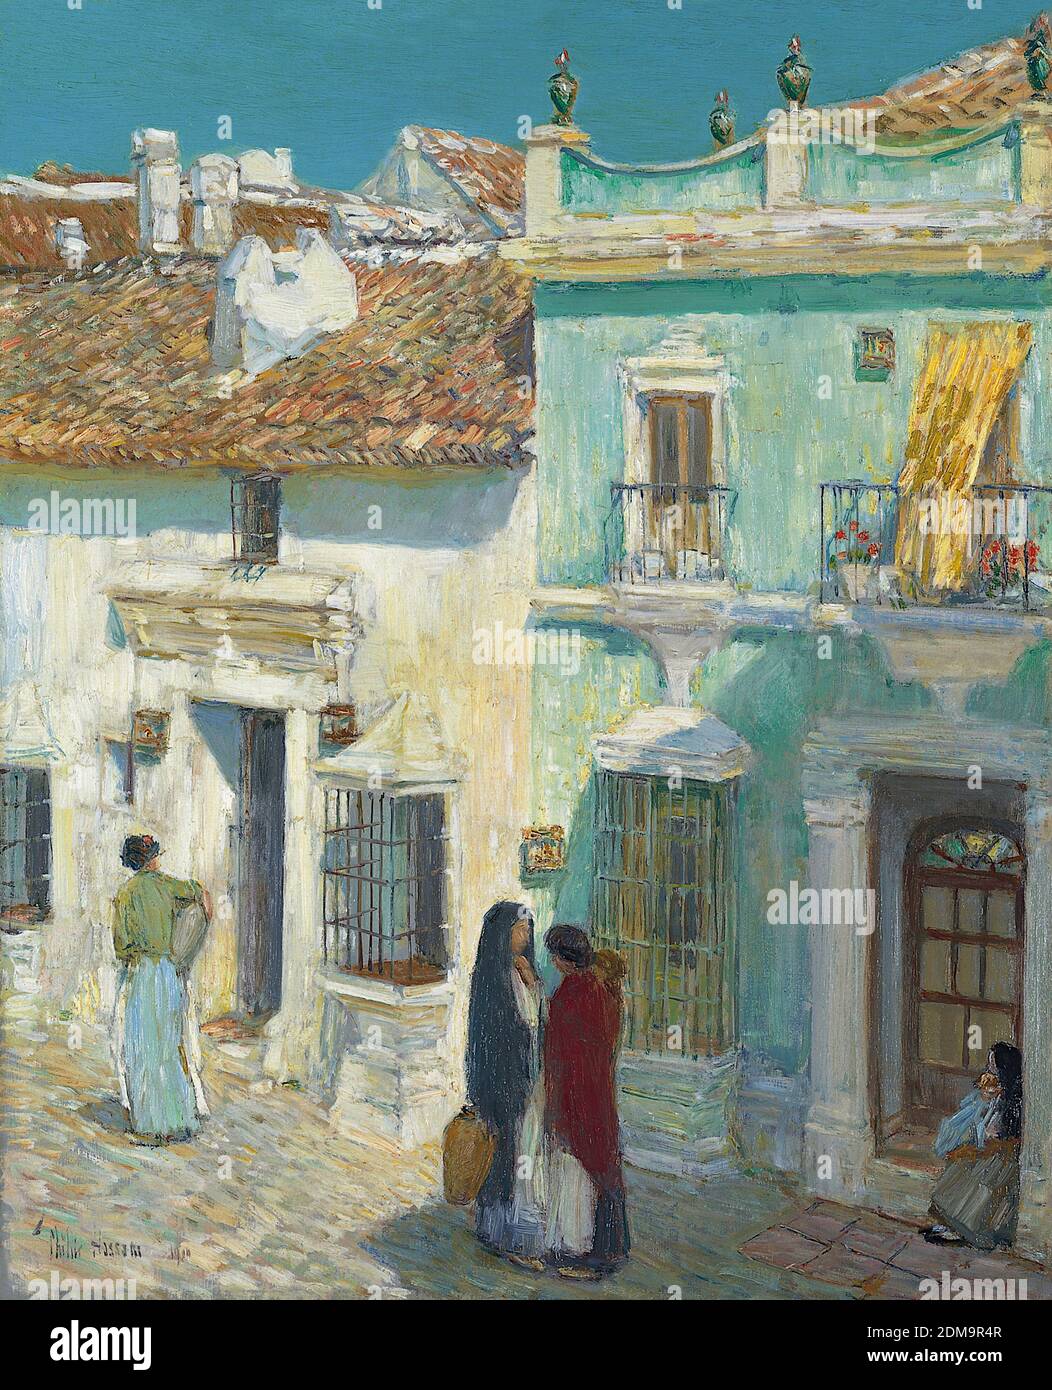 Plaza de la Merced, Ronda 1910 American Impressionist Painting von Childe Hassam - sehr hohe Auflösung und Bildqualität Stockfoto